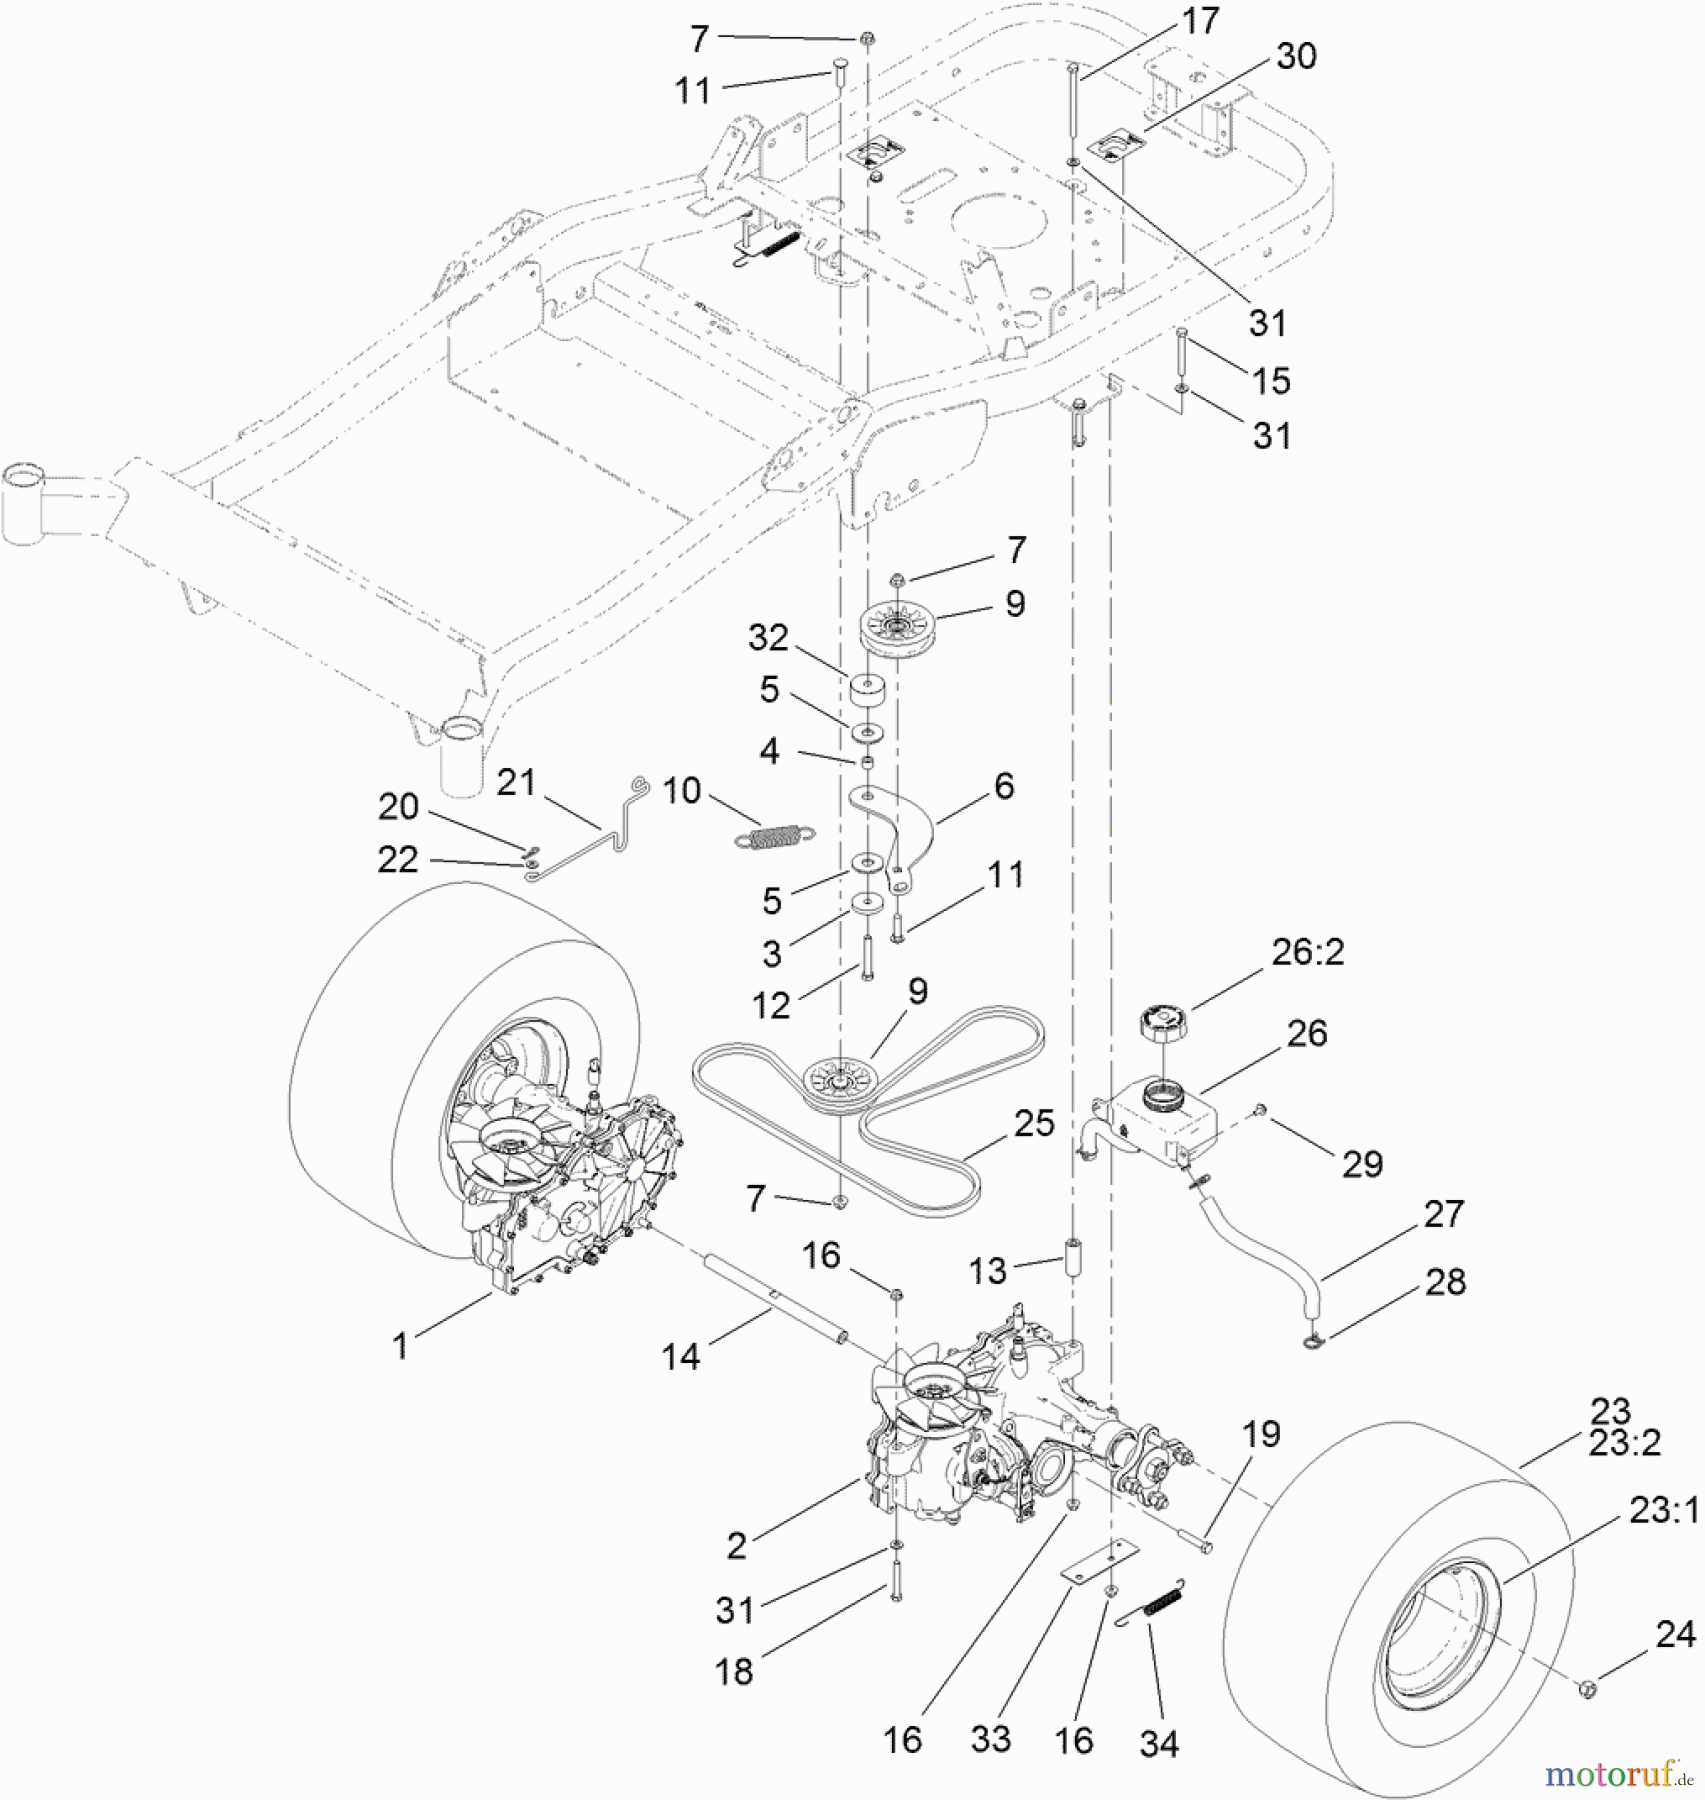  Toro Neu Mowers, Zero-Turn 74920 (ZX4820) - Toro TITAN ZX4820 Zero-Turn-Radius Riding Mower, 2012 (SN 312000001-312999999) TRACTION DRIVE ASSEMBLY